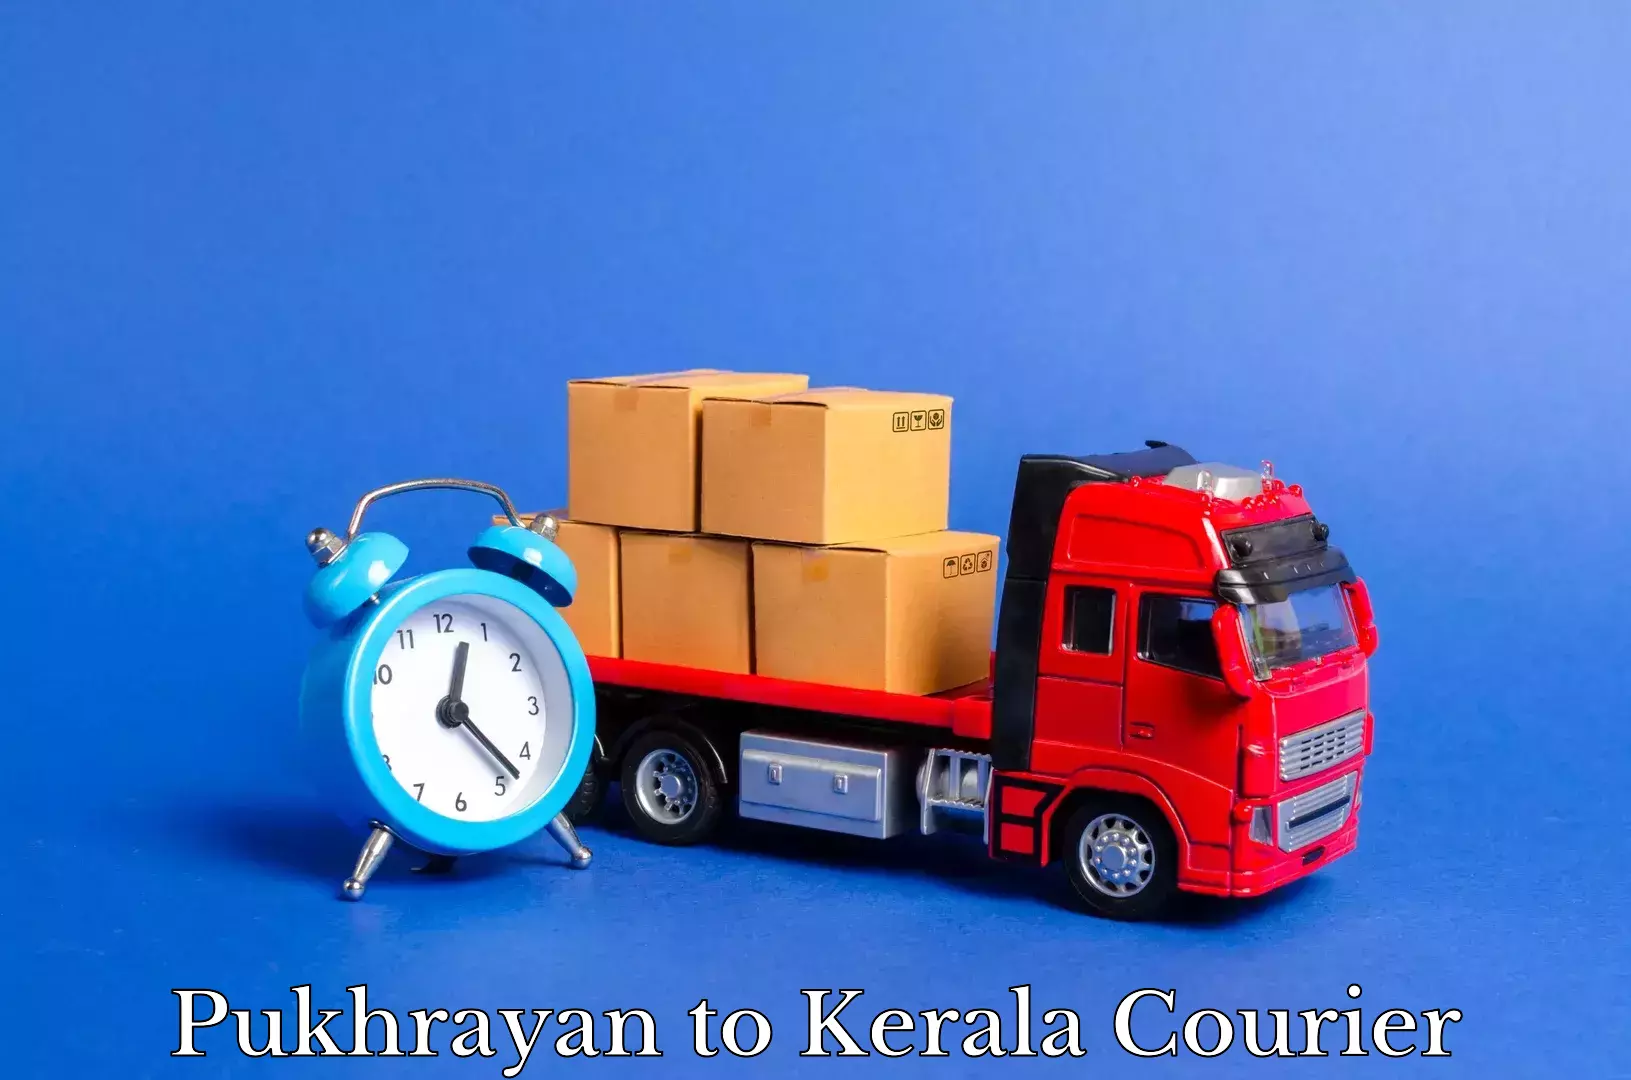 Home shifting experts Pukhrayan to Kerala